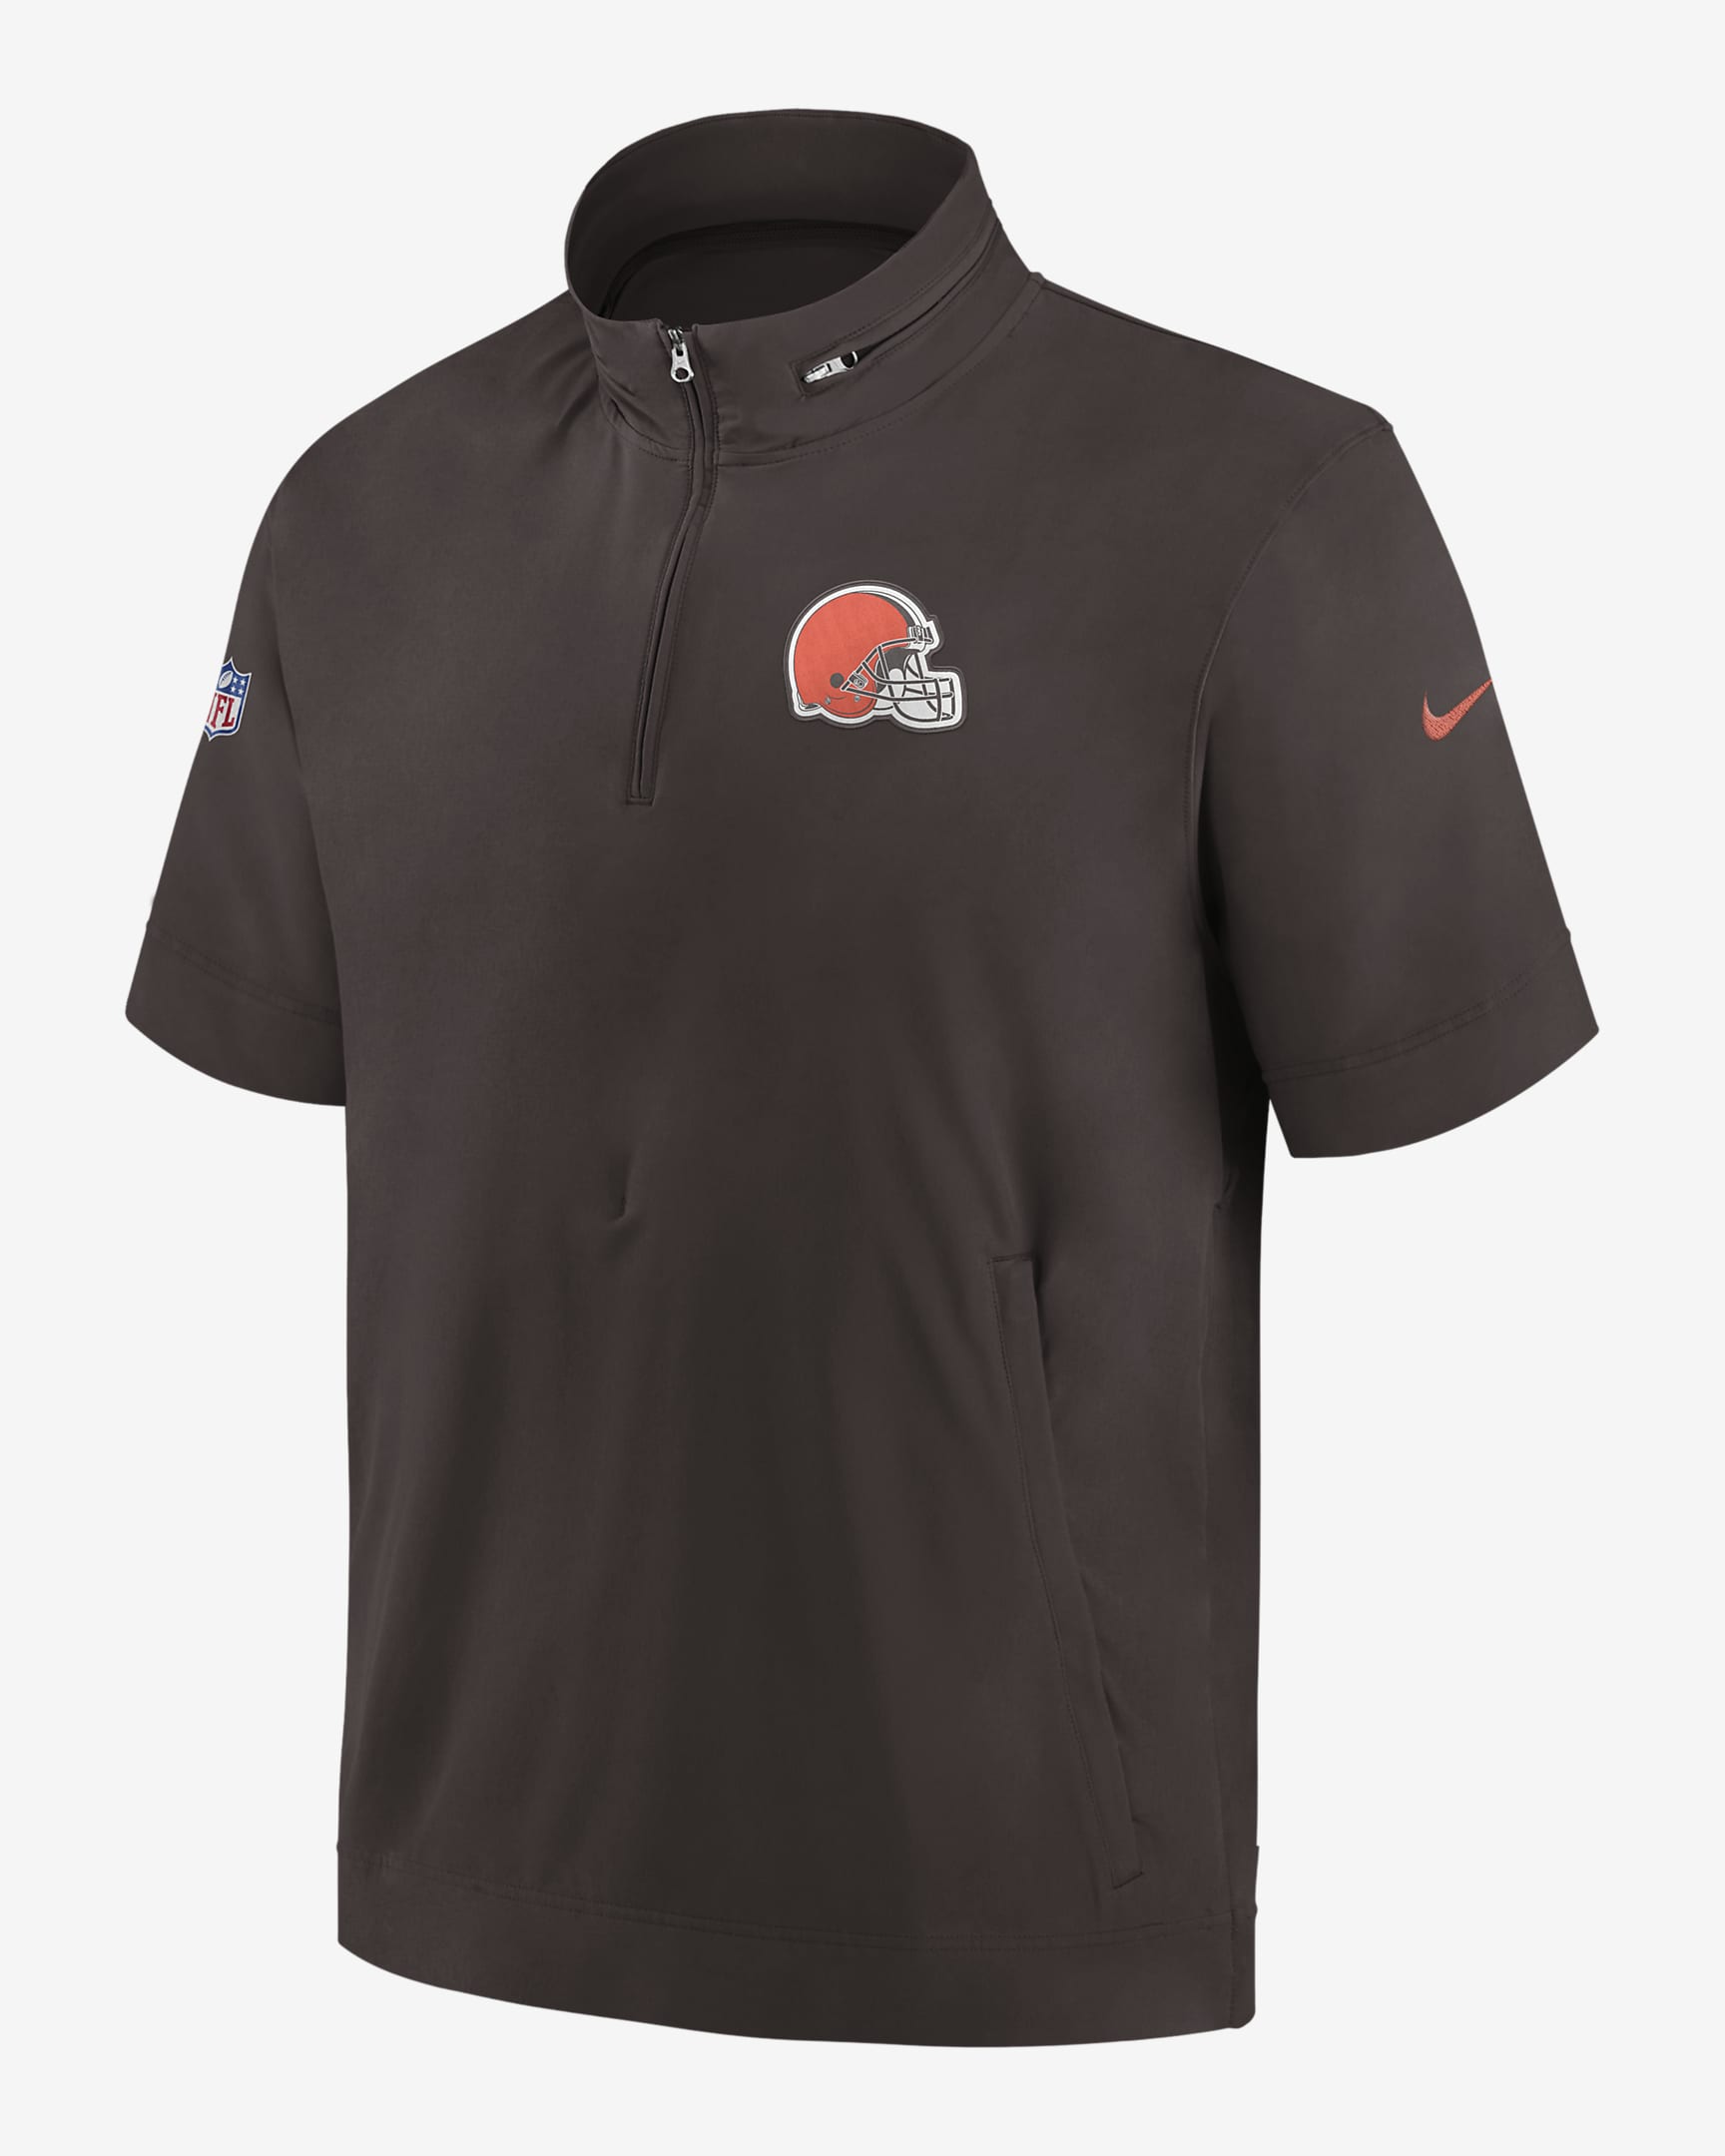 Nike Sideline Coach (NFL Cleveland Browns) Men's Short-Sleeve Jacket ...